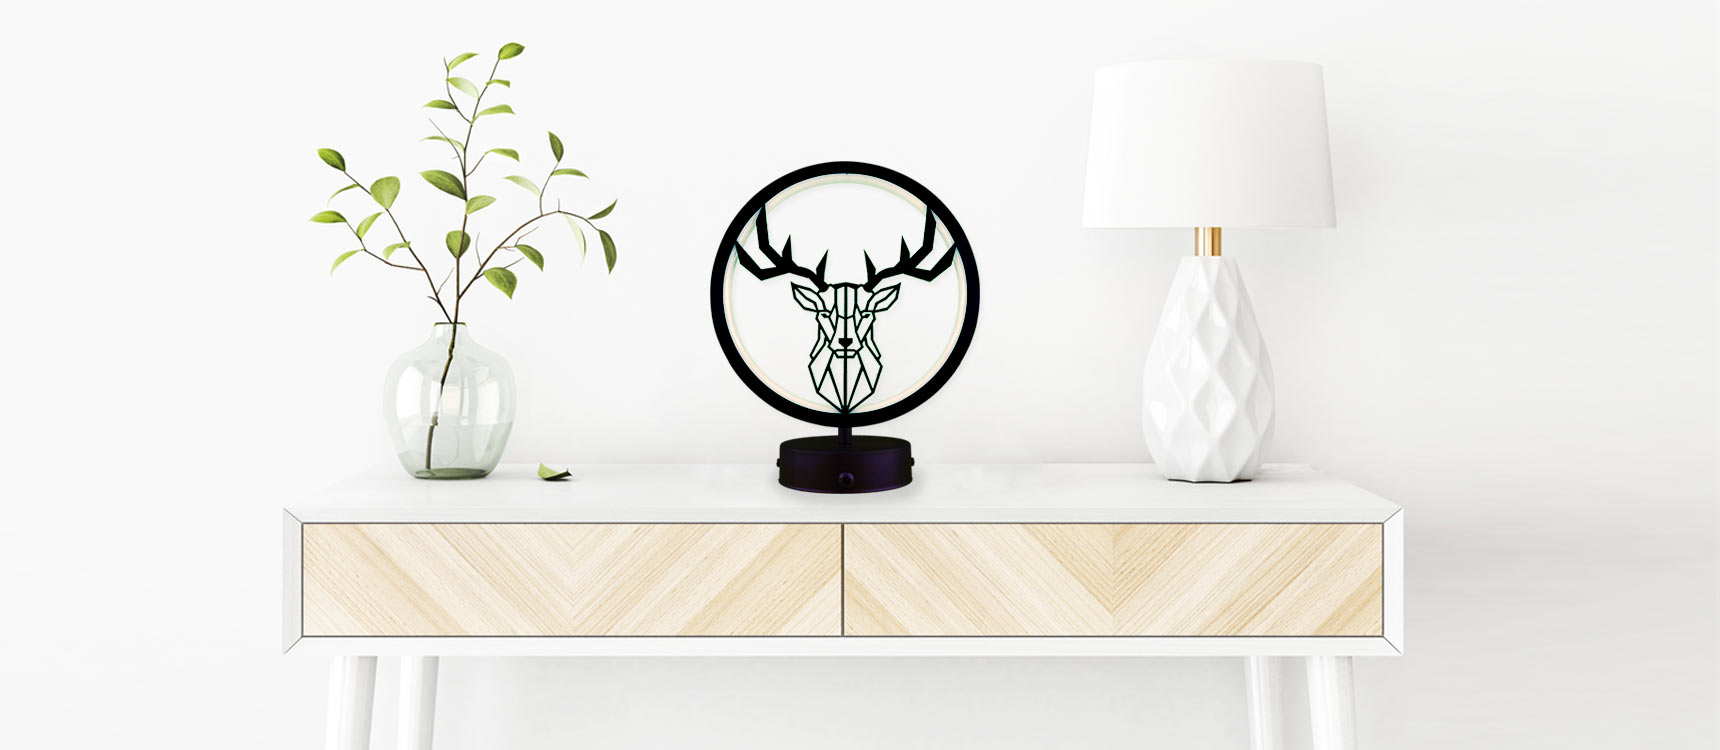 parbek geyik model masa lambası